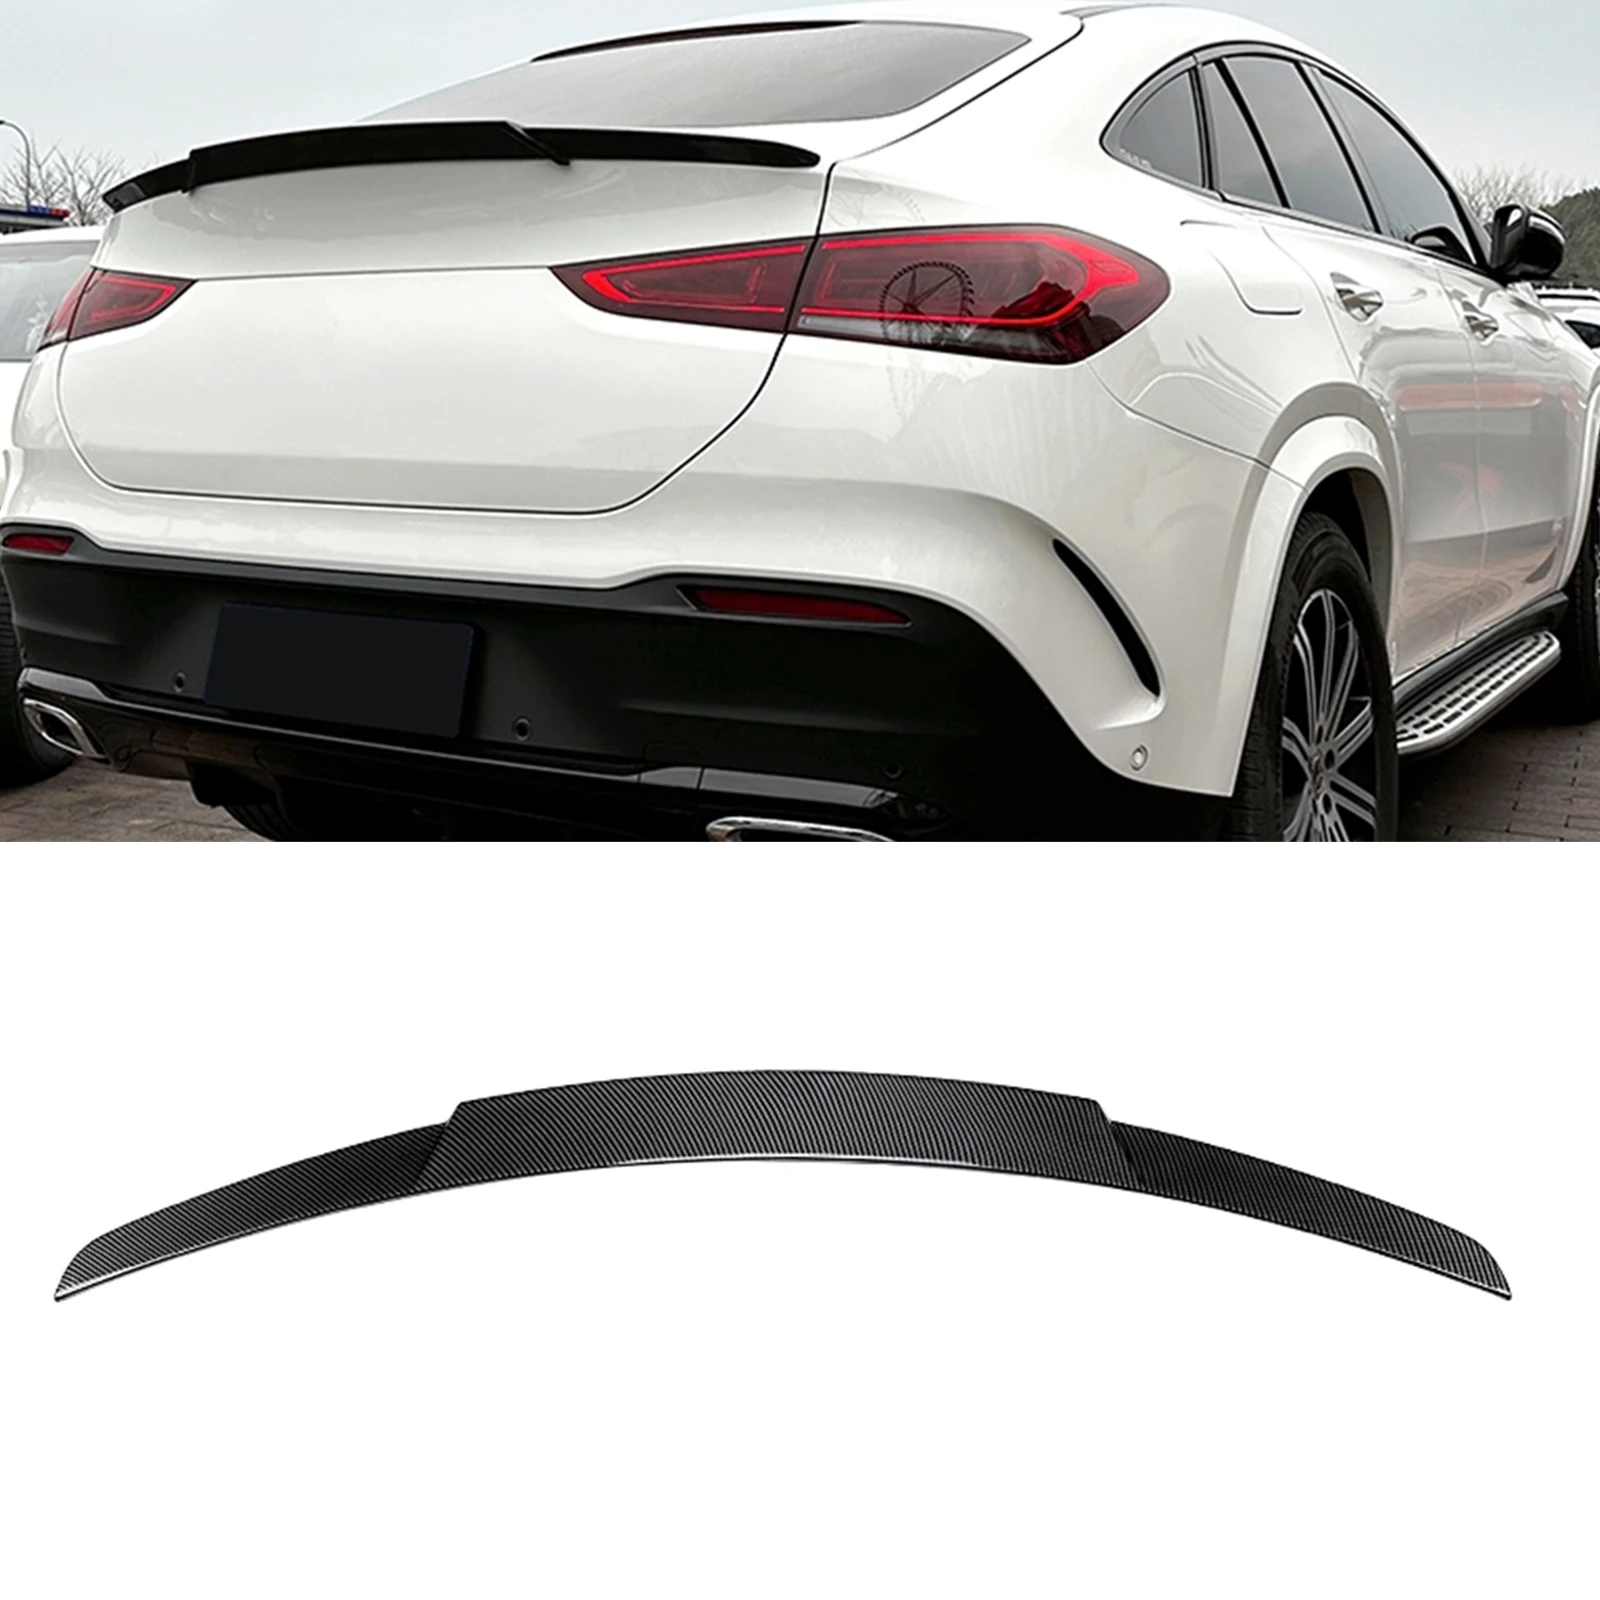 

Задний спойлер для крышки багажника, крыло для Mercedes Benz GLE Coupe C167 2020-2023 GLE350 GLE53, углеродное волокно, внешний вид/блеск, черный сплиттер для губ